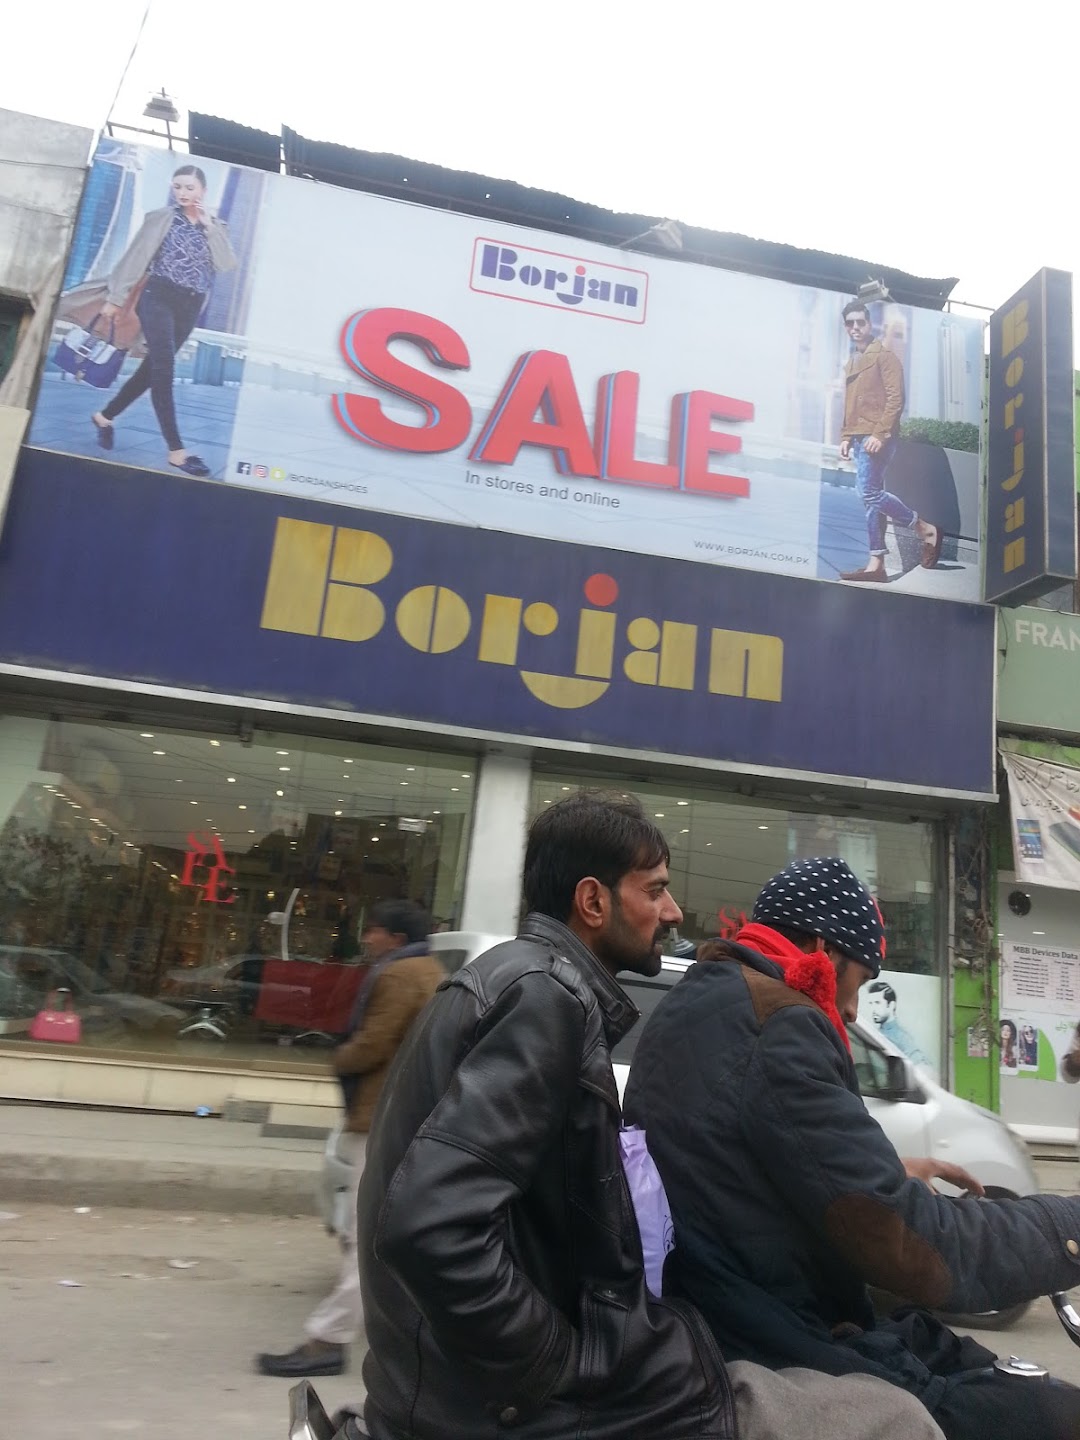 Borjan Shop